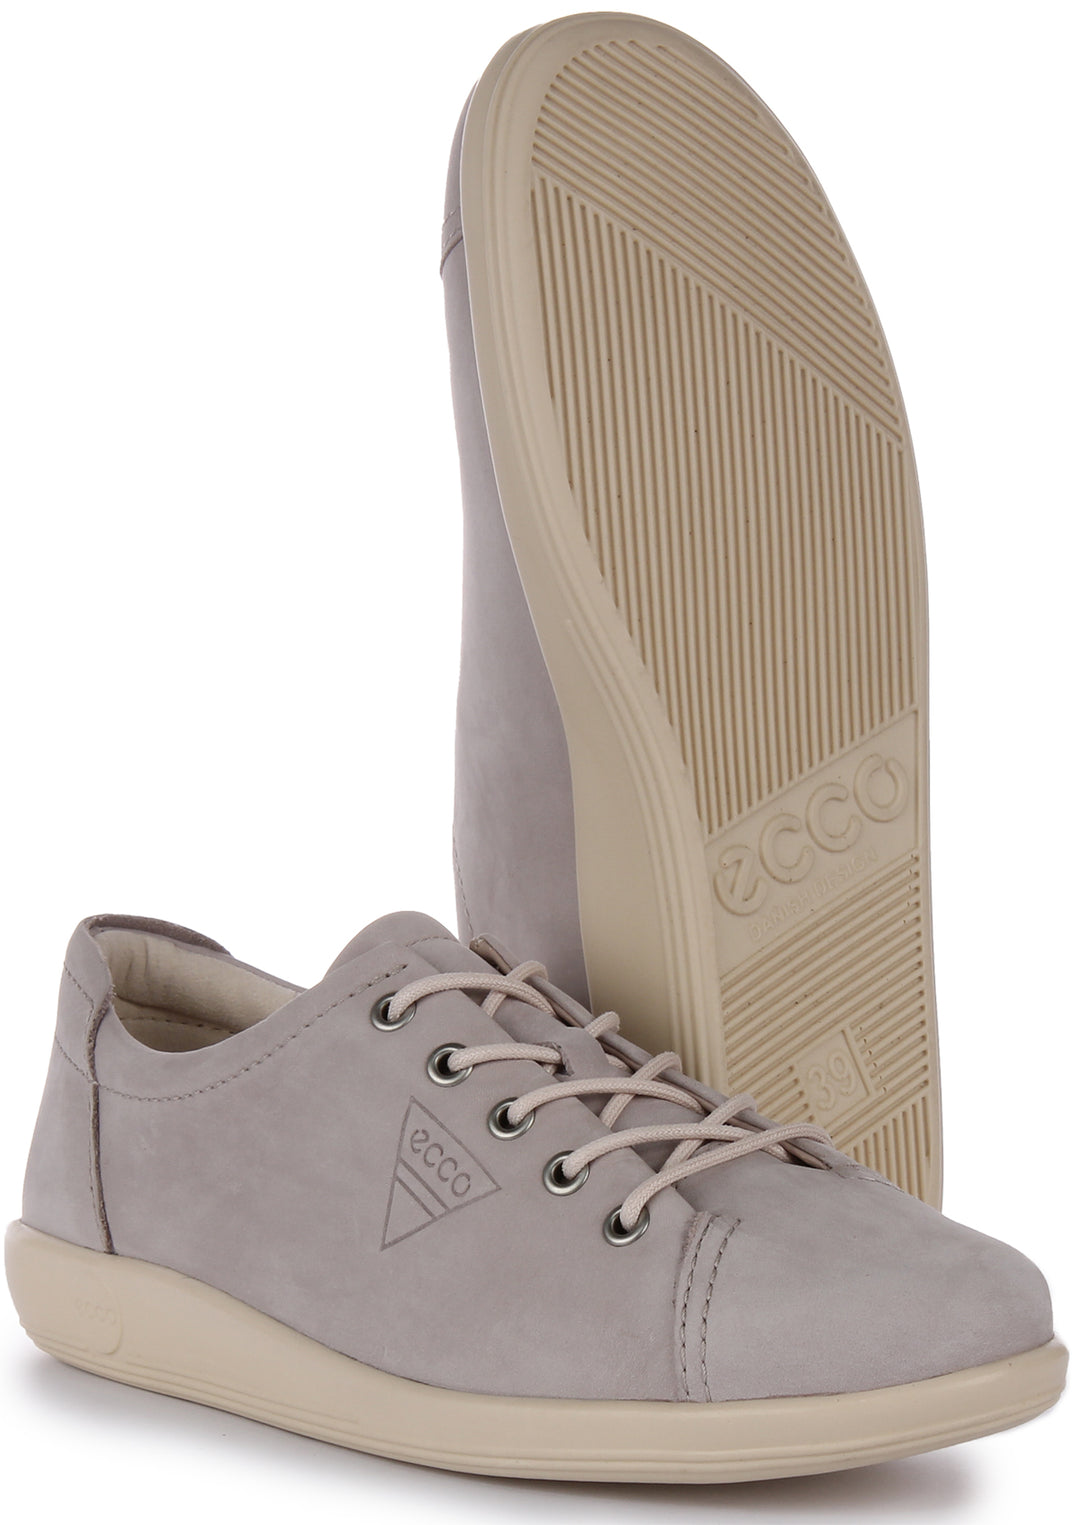 Bygge videre på Forbyde Overtræder Ecco Soft 2.0 In Grey For Women | Lace Up Nubuck Walking Shoe – 4feetshoes